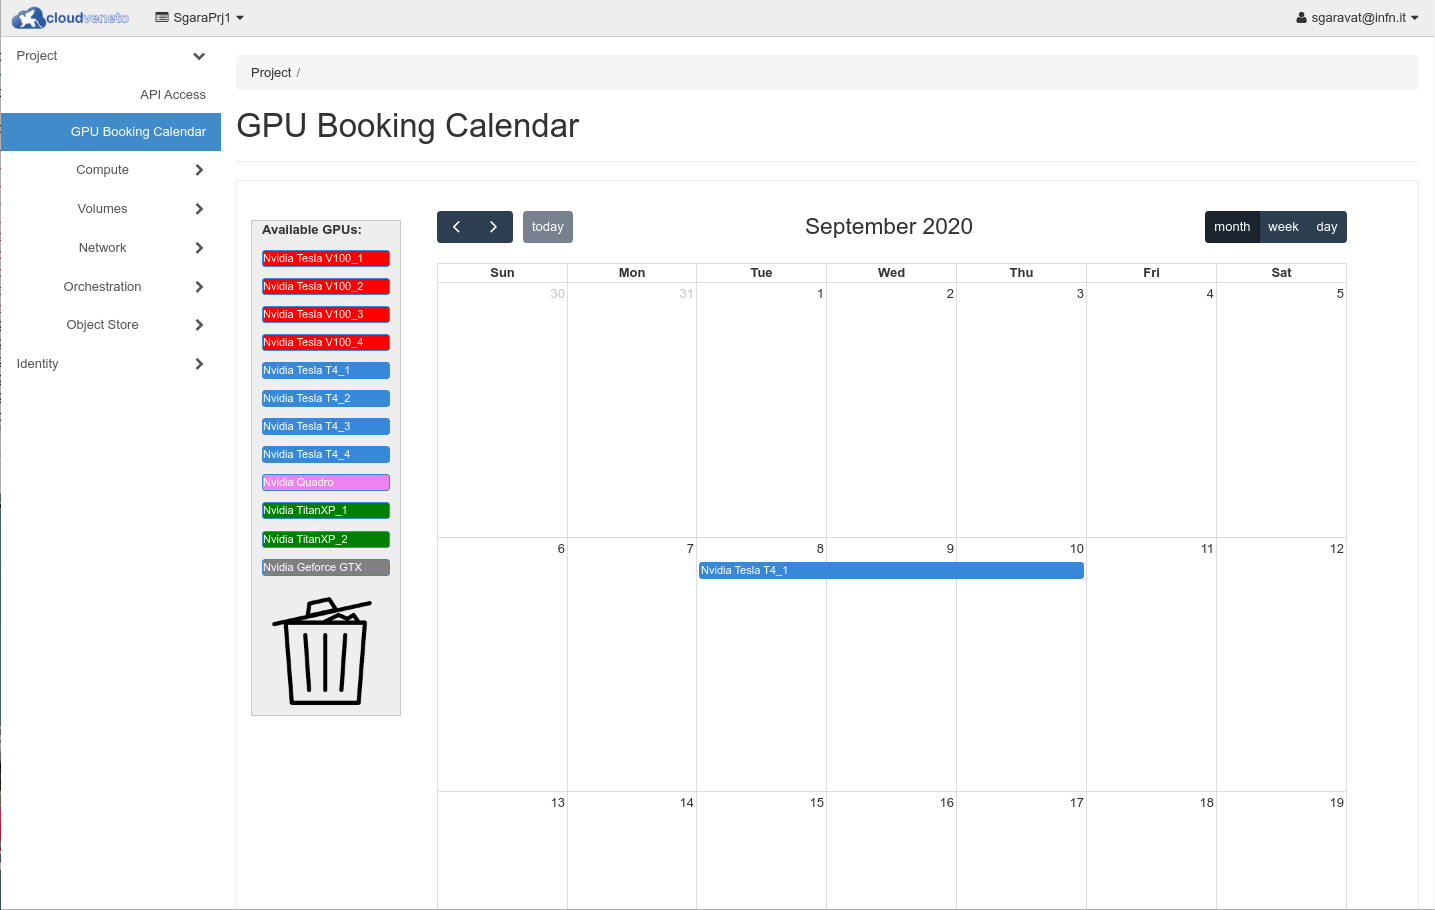 _images/gpu_booking_calendar.png